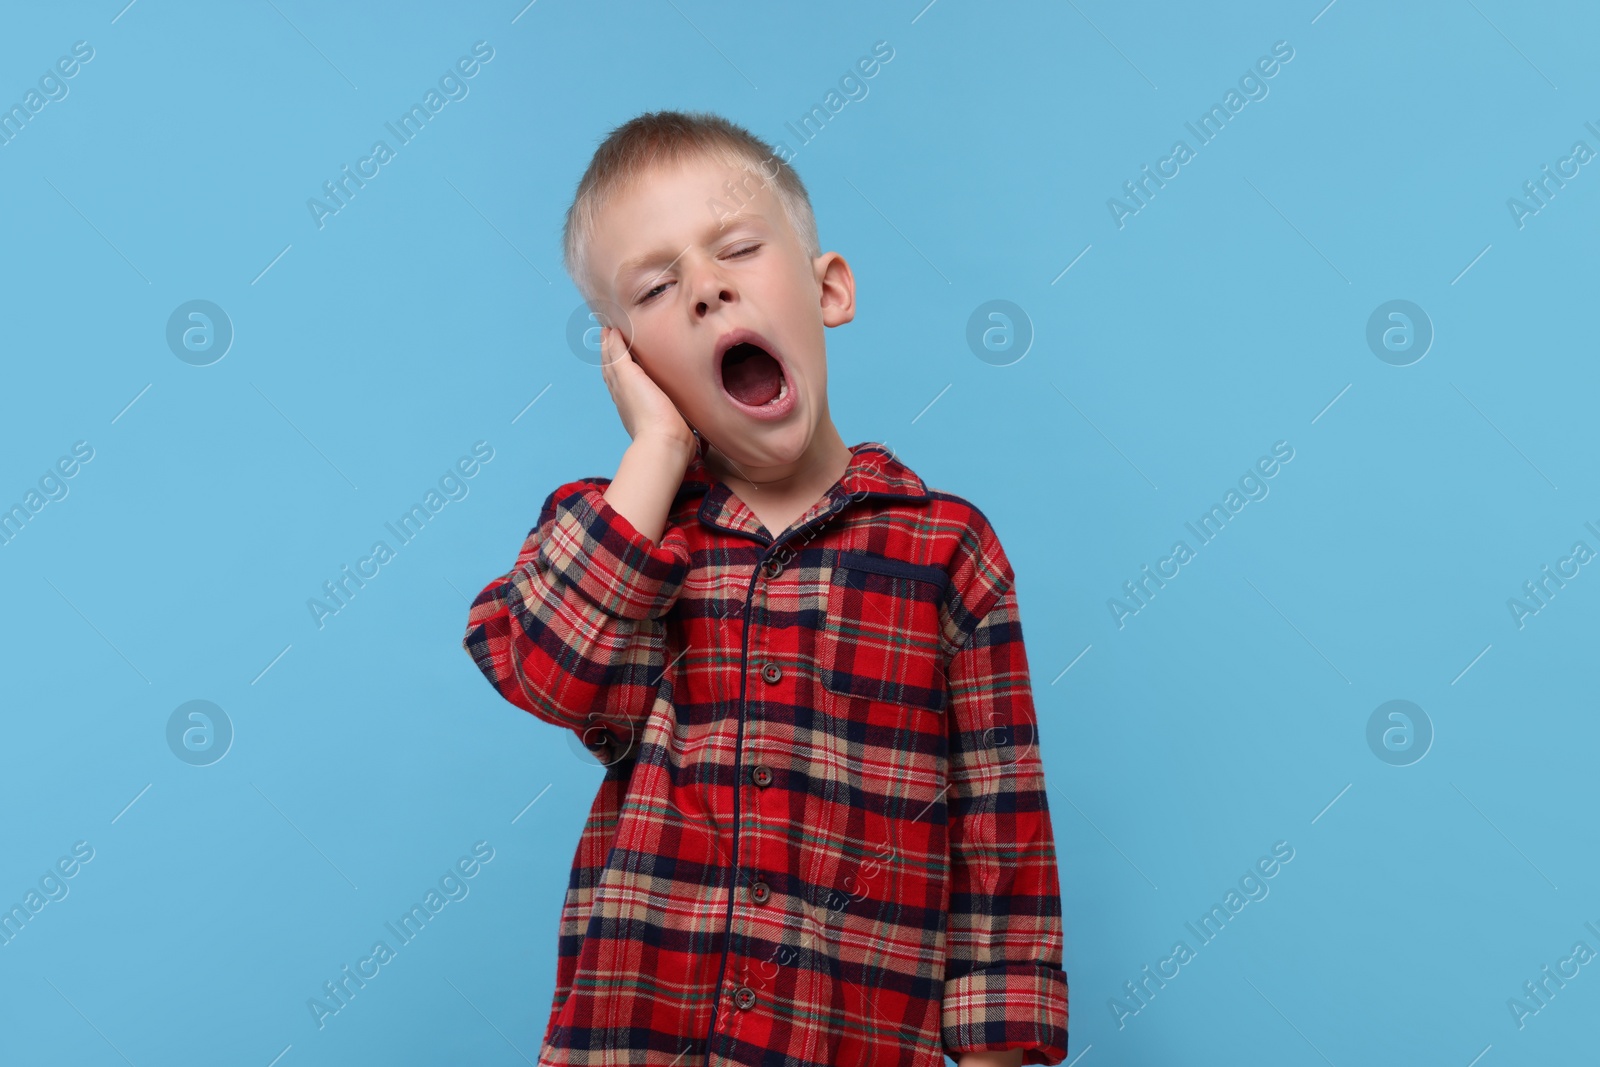 Photo of Sleepy boy yawning on light blue background. Insomnia problem